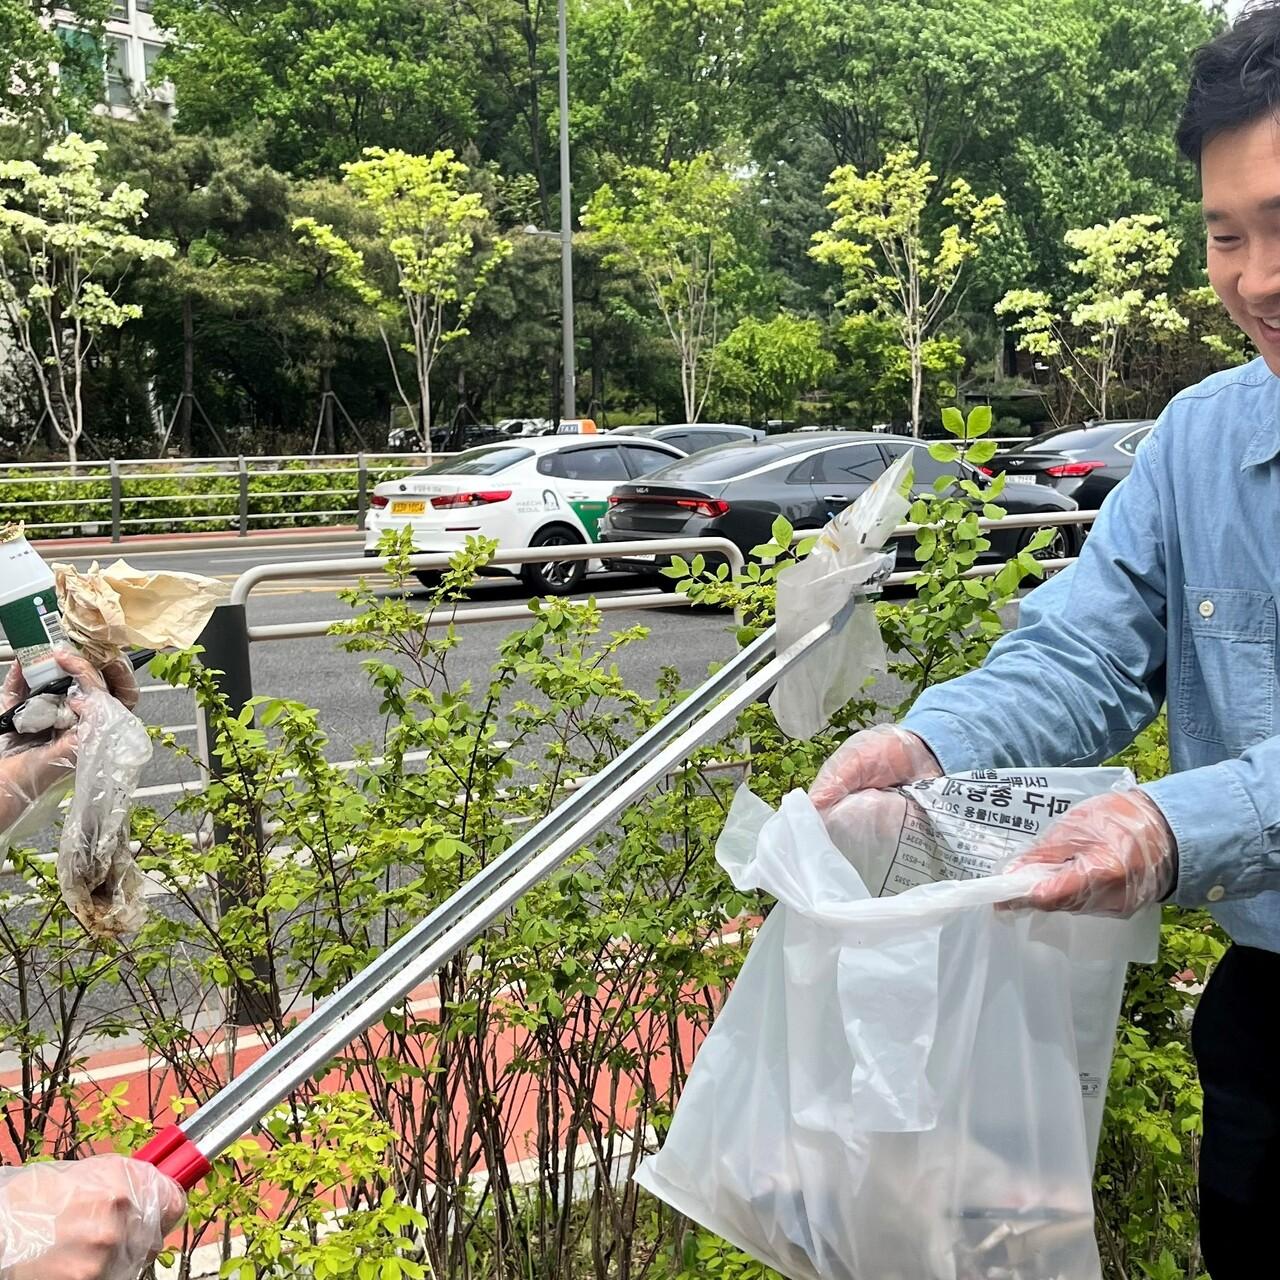 ZEISS Mitarbeitende in Korea sammeln Müll am Earth Day